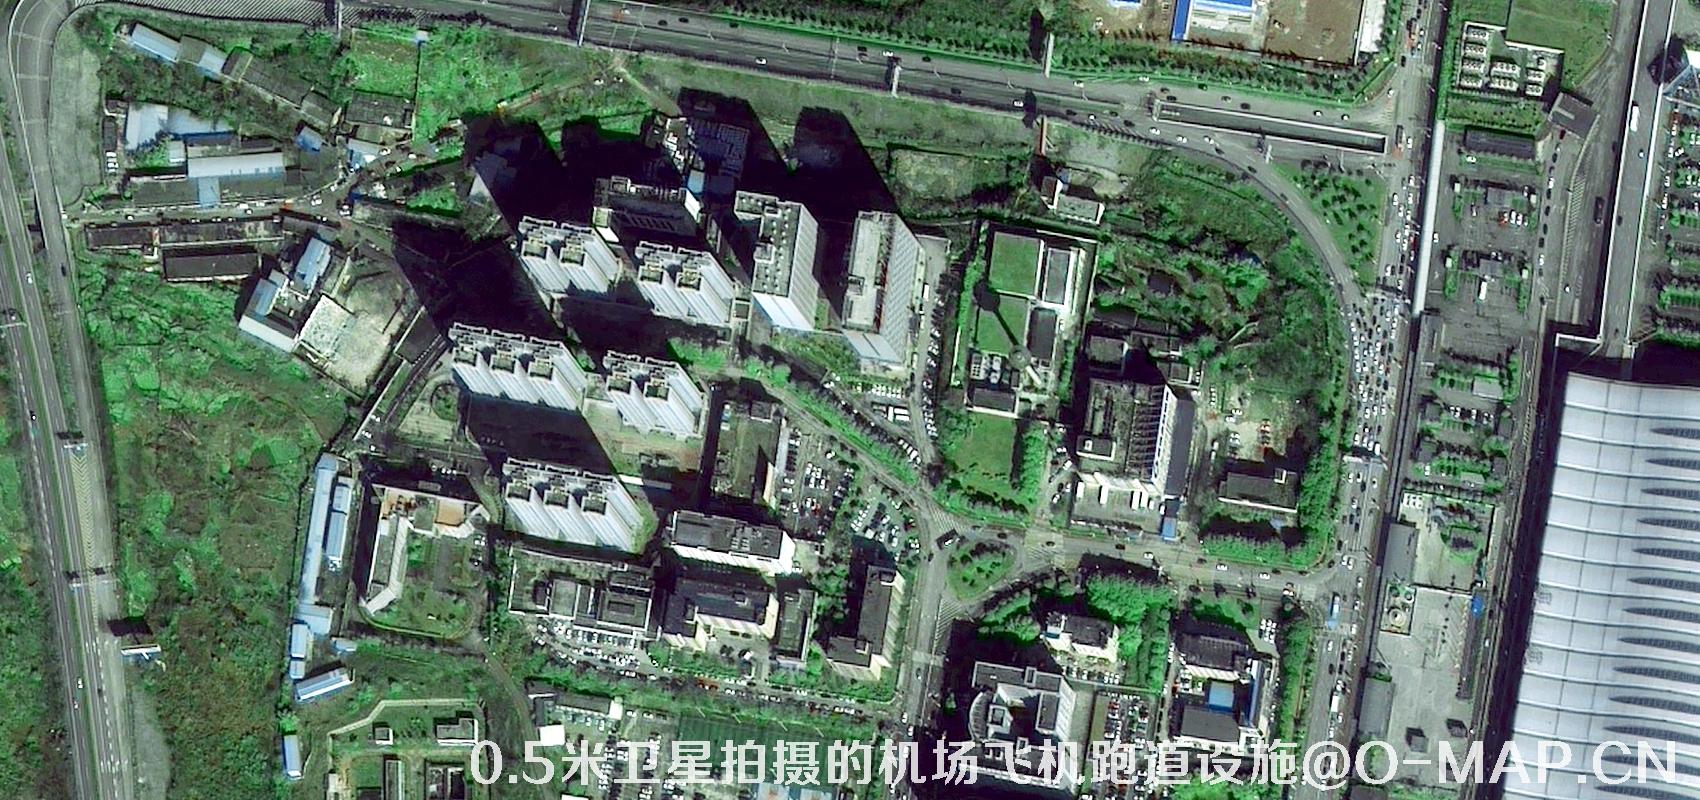 0.5米分辨率卫星拍摄的机场飞机跑道设施卫星图片